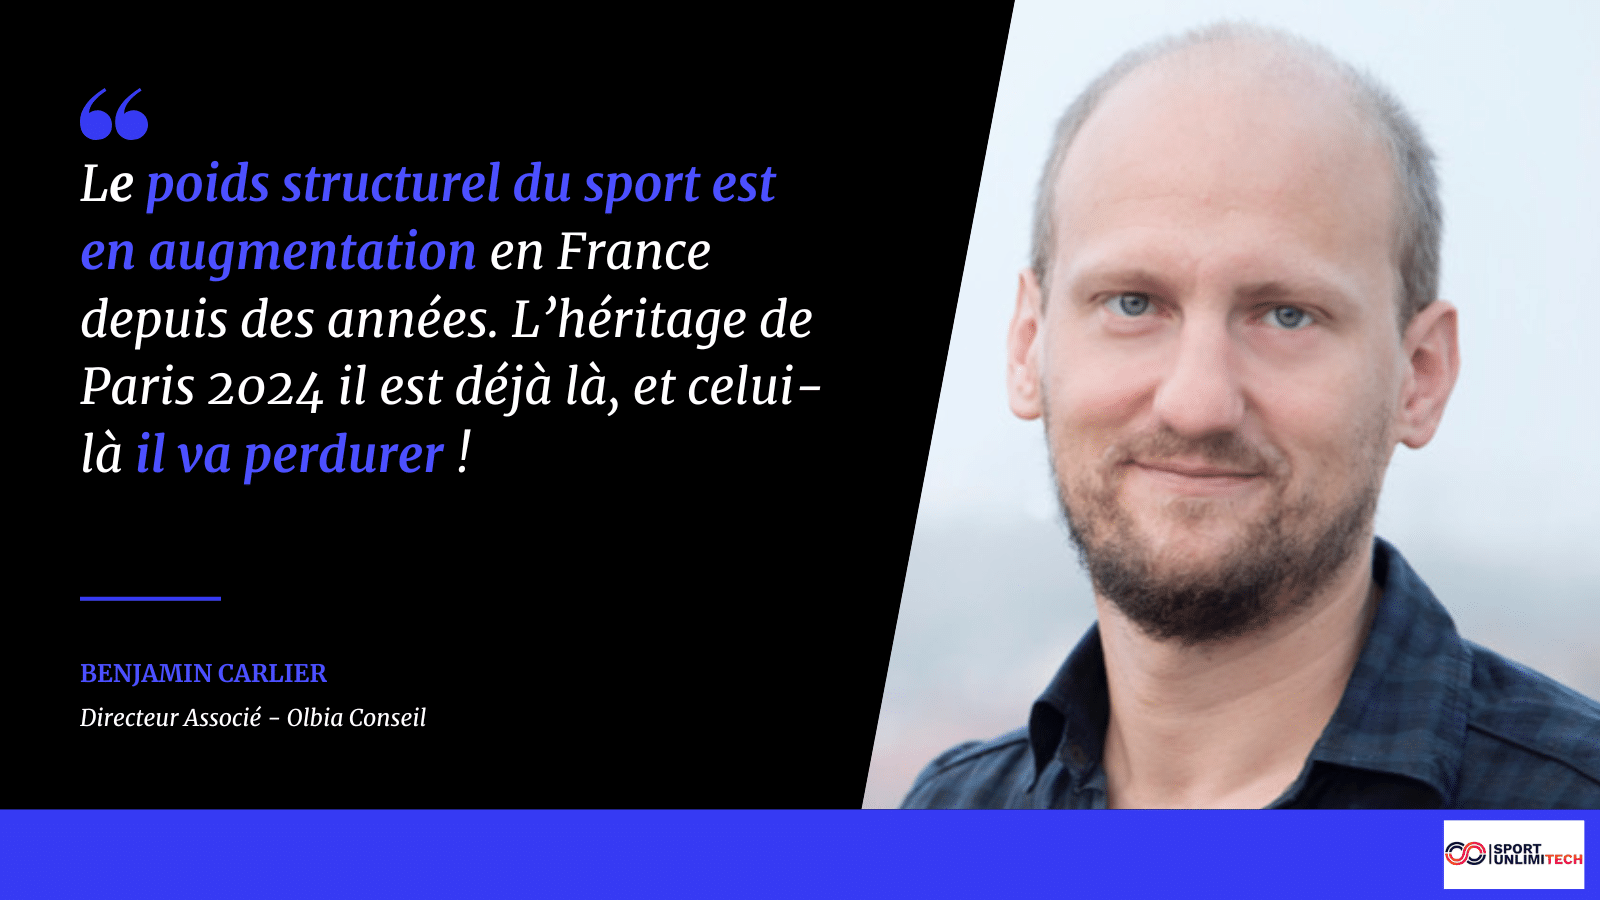 Interview – Benjamin Carlier « L’héritage de Paris 2024 ? L’augmentation du poids structurel du sport ! »